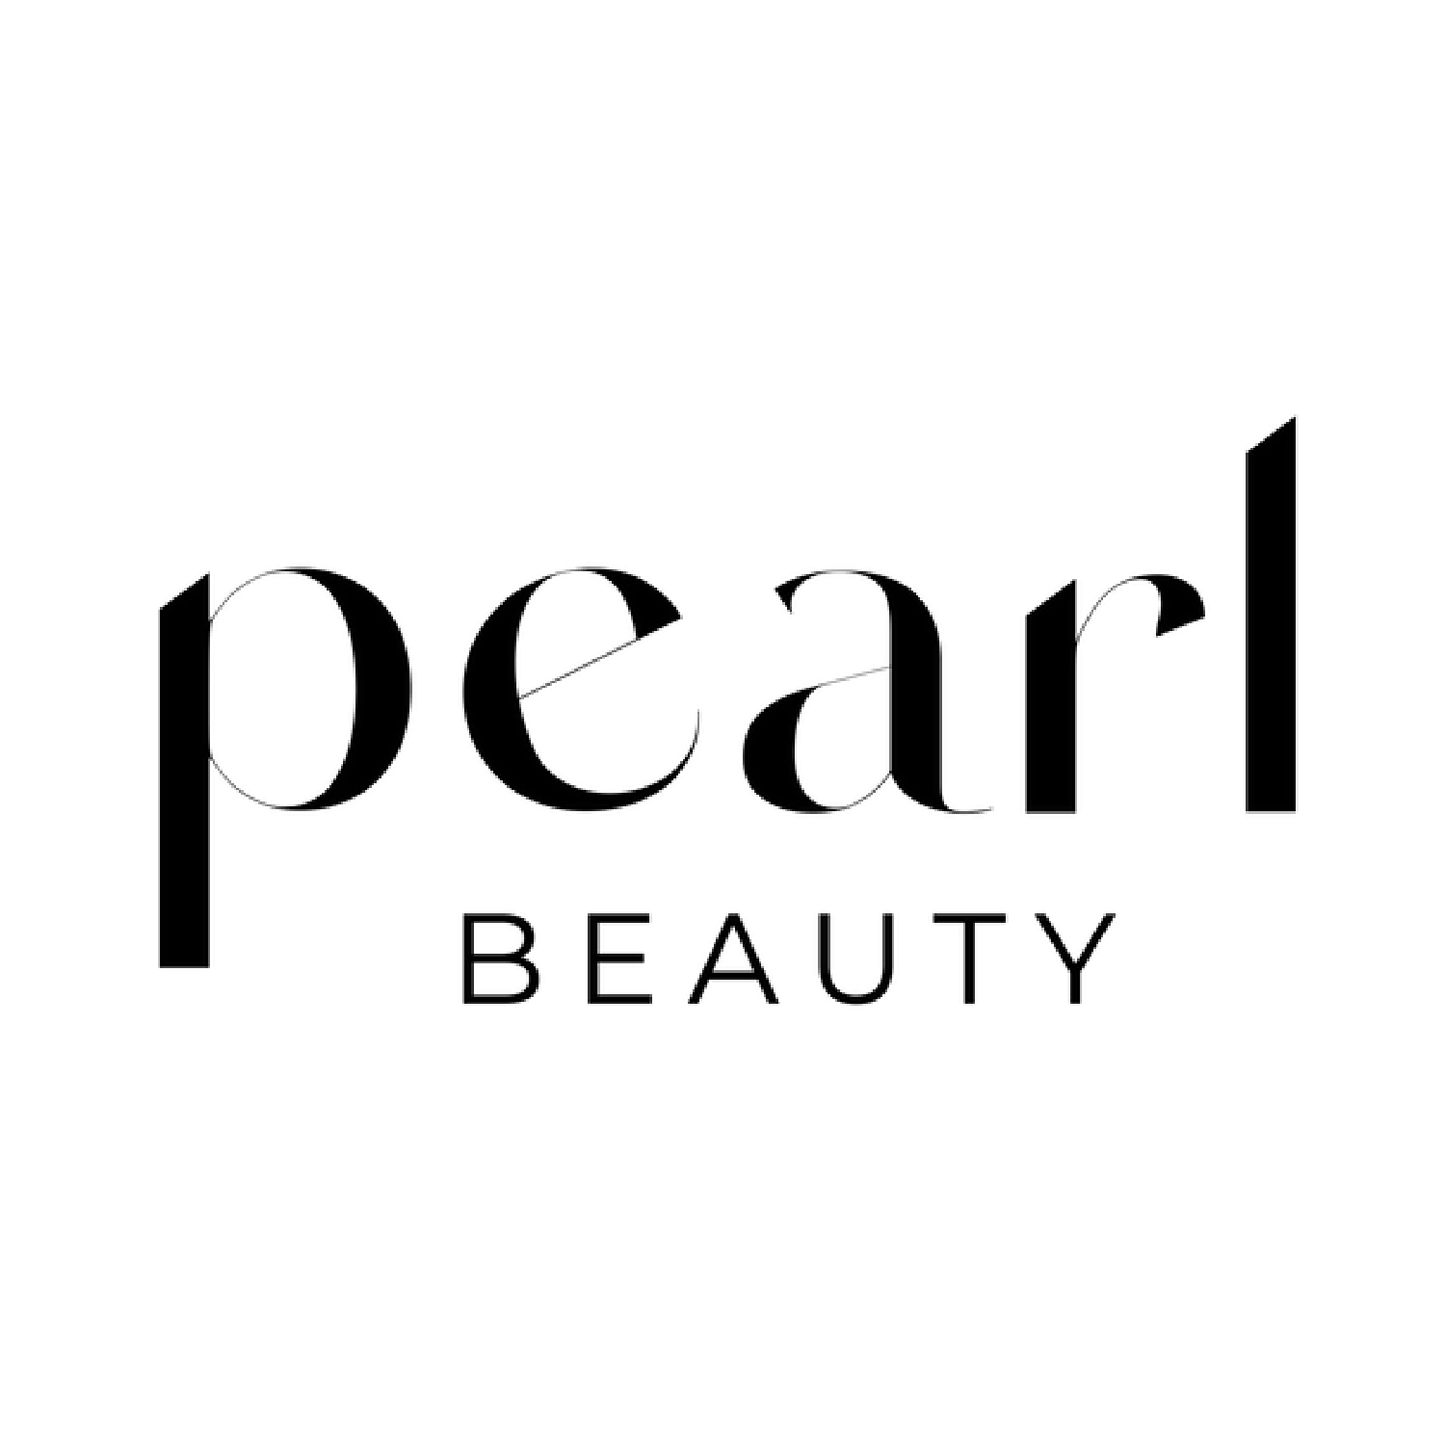 Pearl Beauty